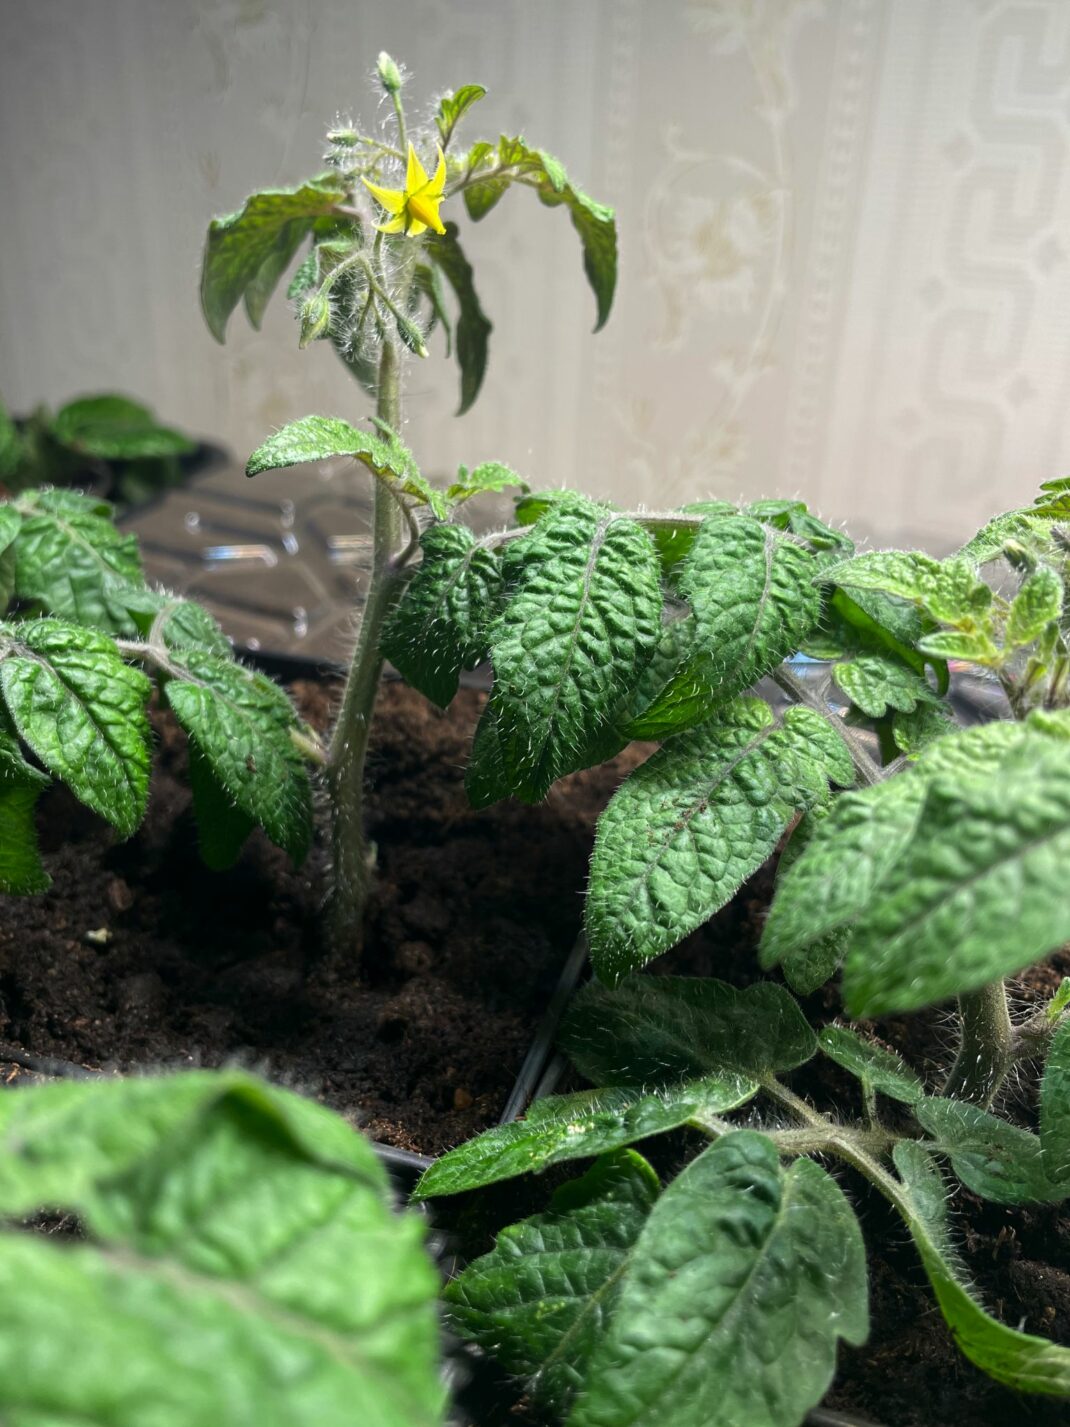 Growing vegetables indoors, tomatoes